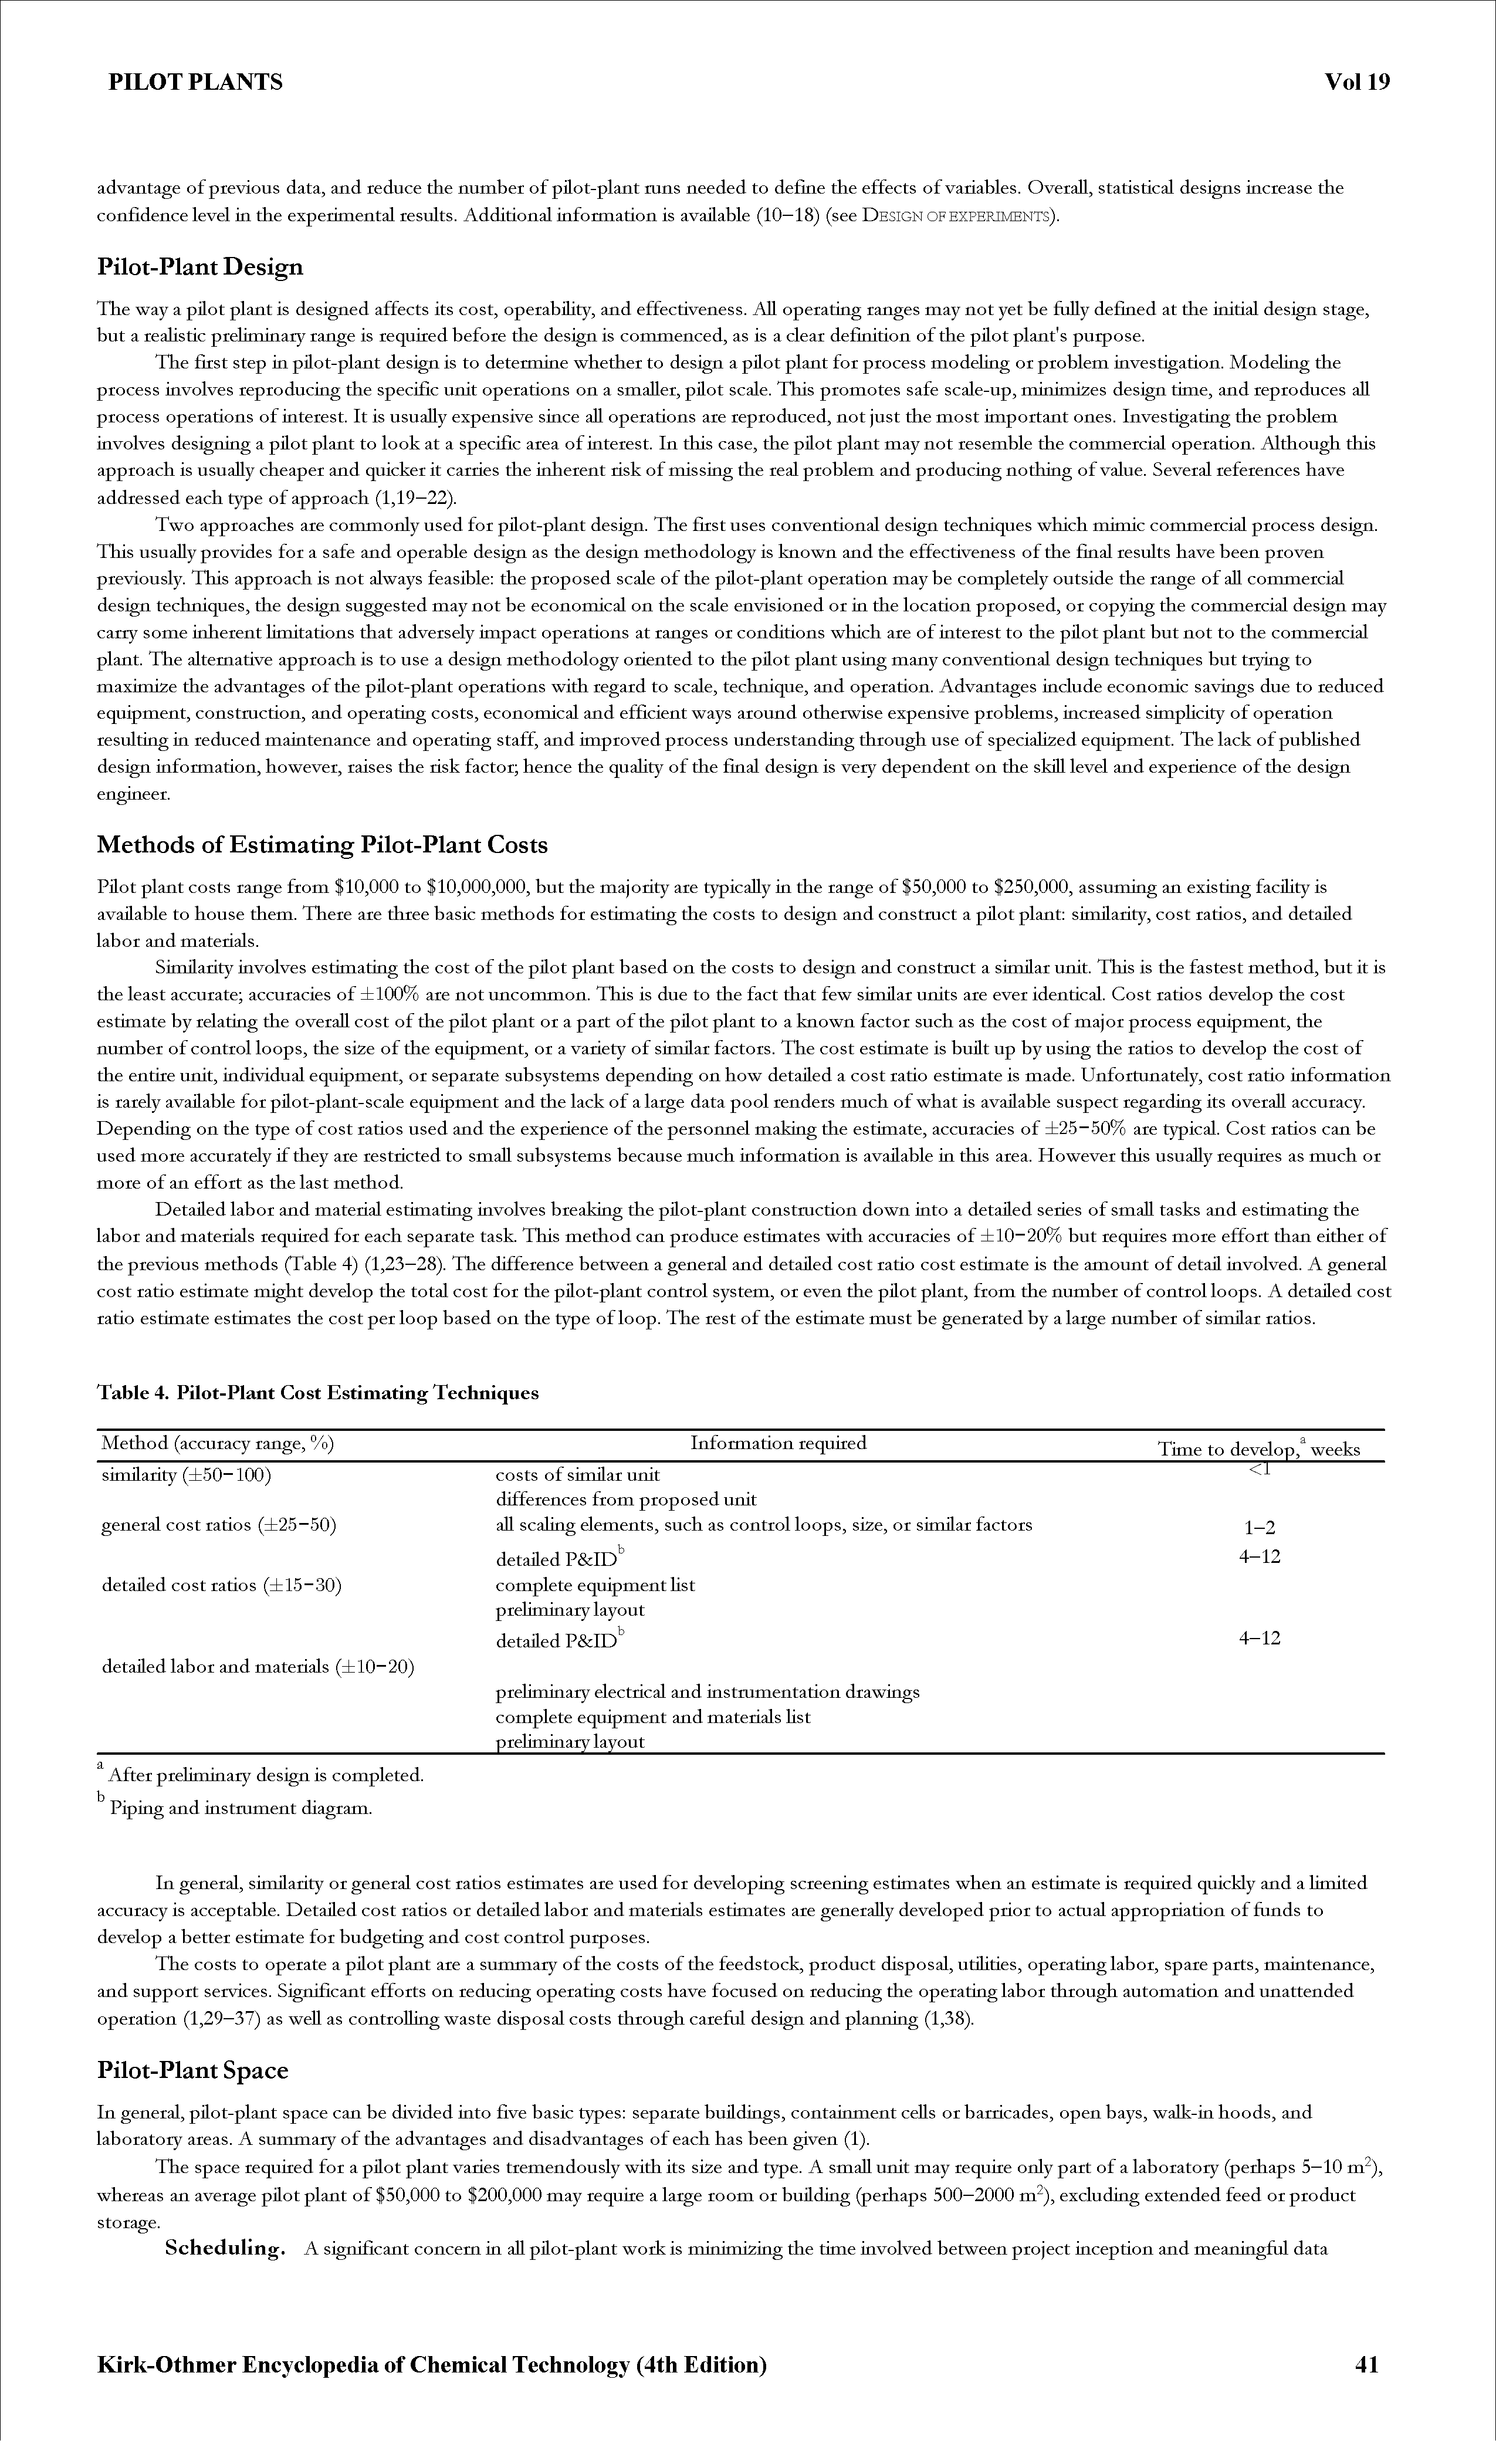 Table 4. Pilot-Plant Cost Estimating Techniques...